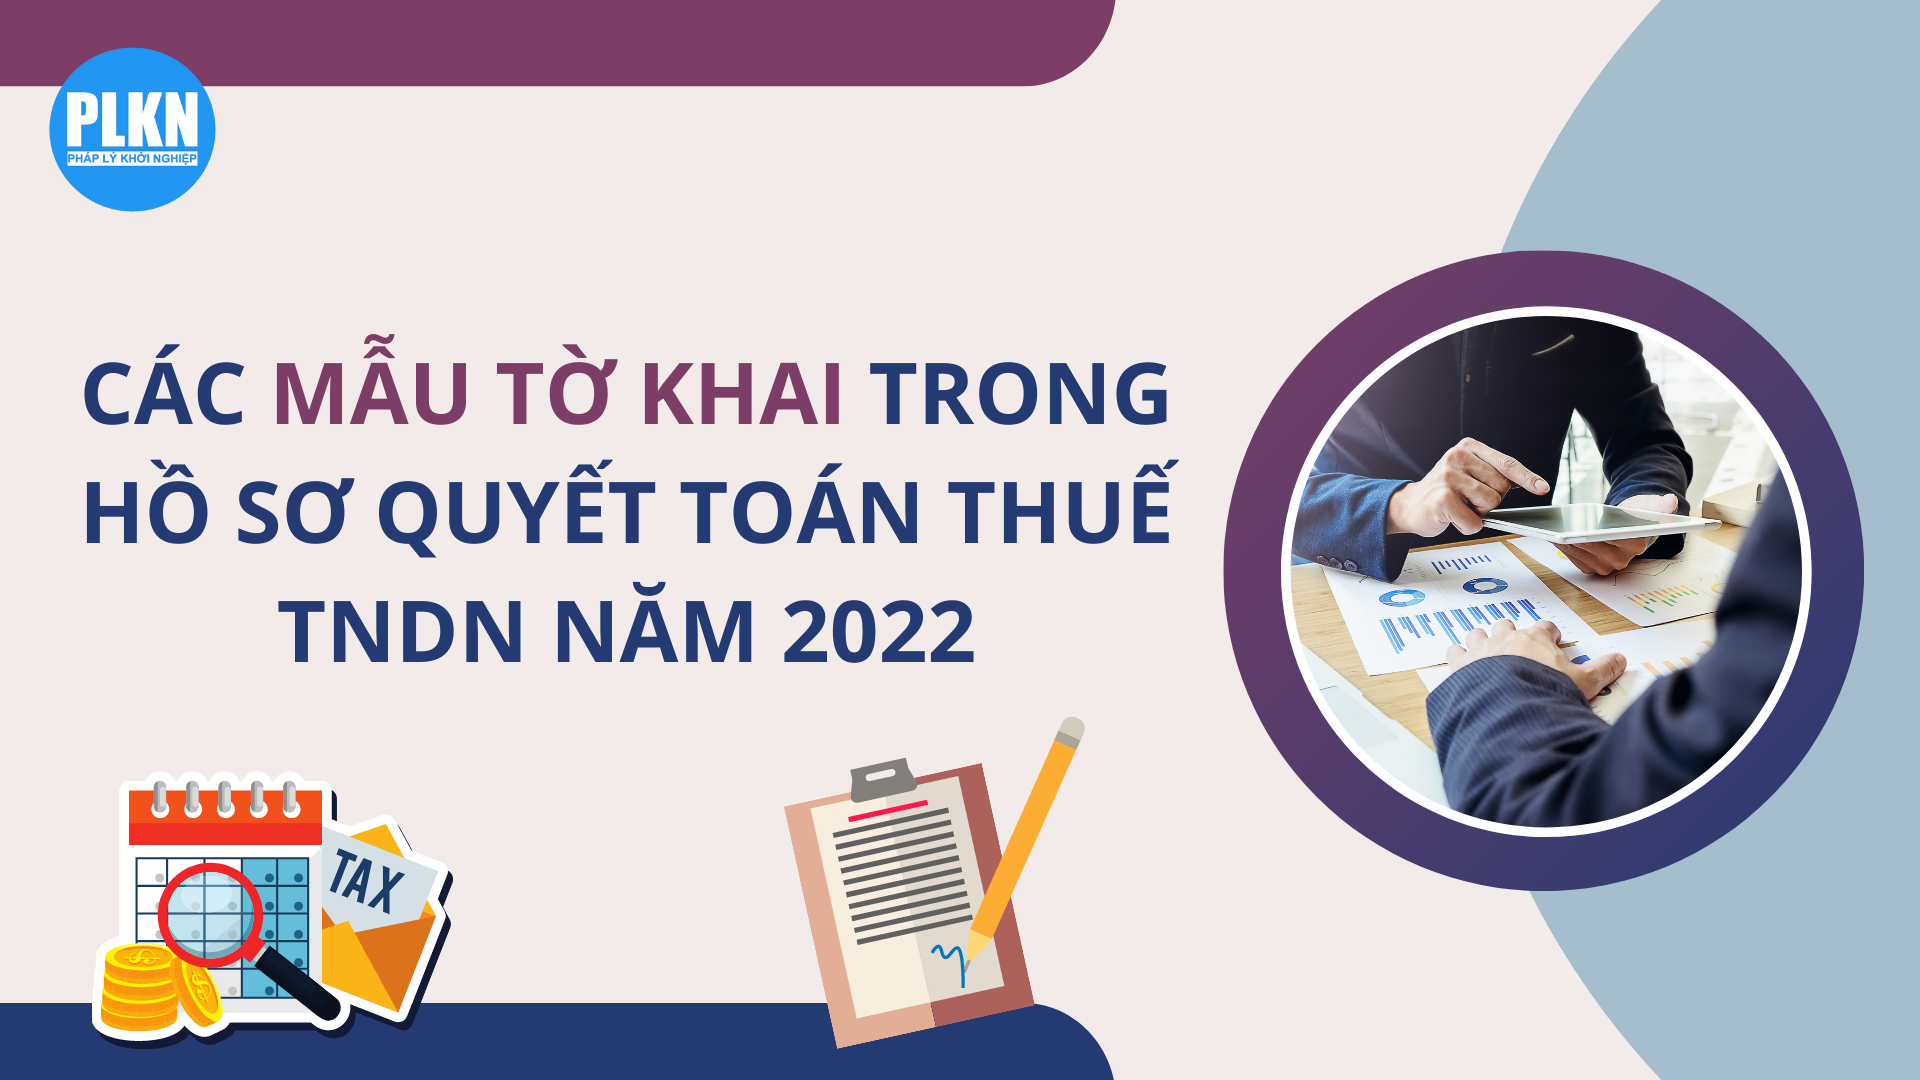 Tổng hợp các mẫu tờ khai trong hồ sơ quyết toán thuế TNDN năm 2022